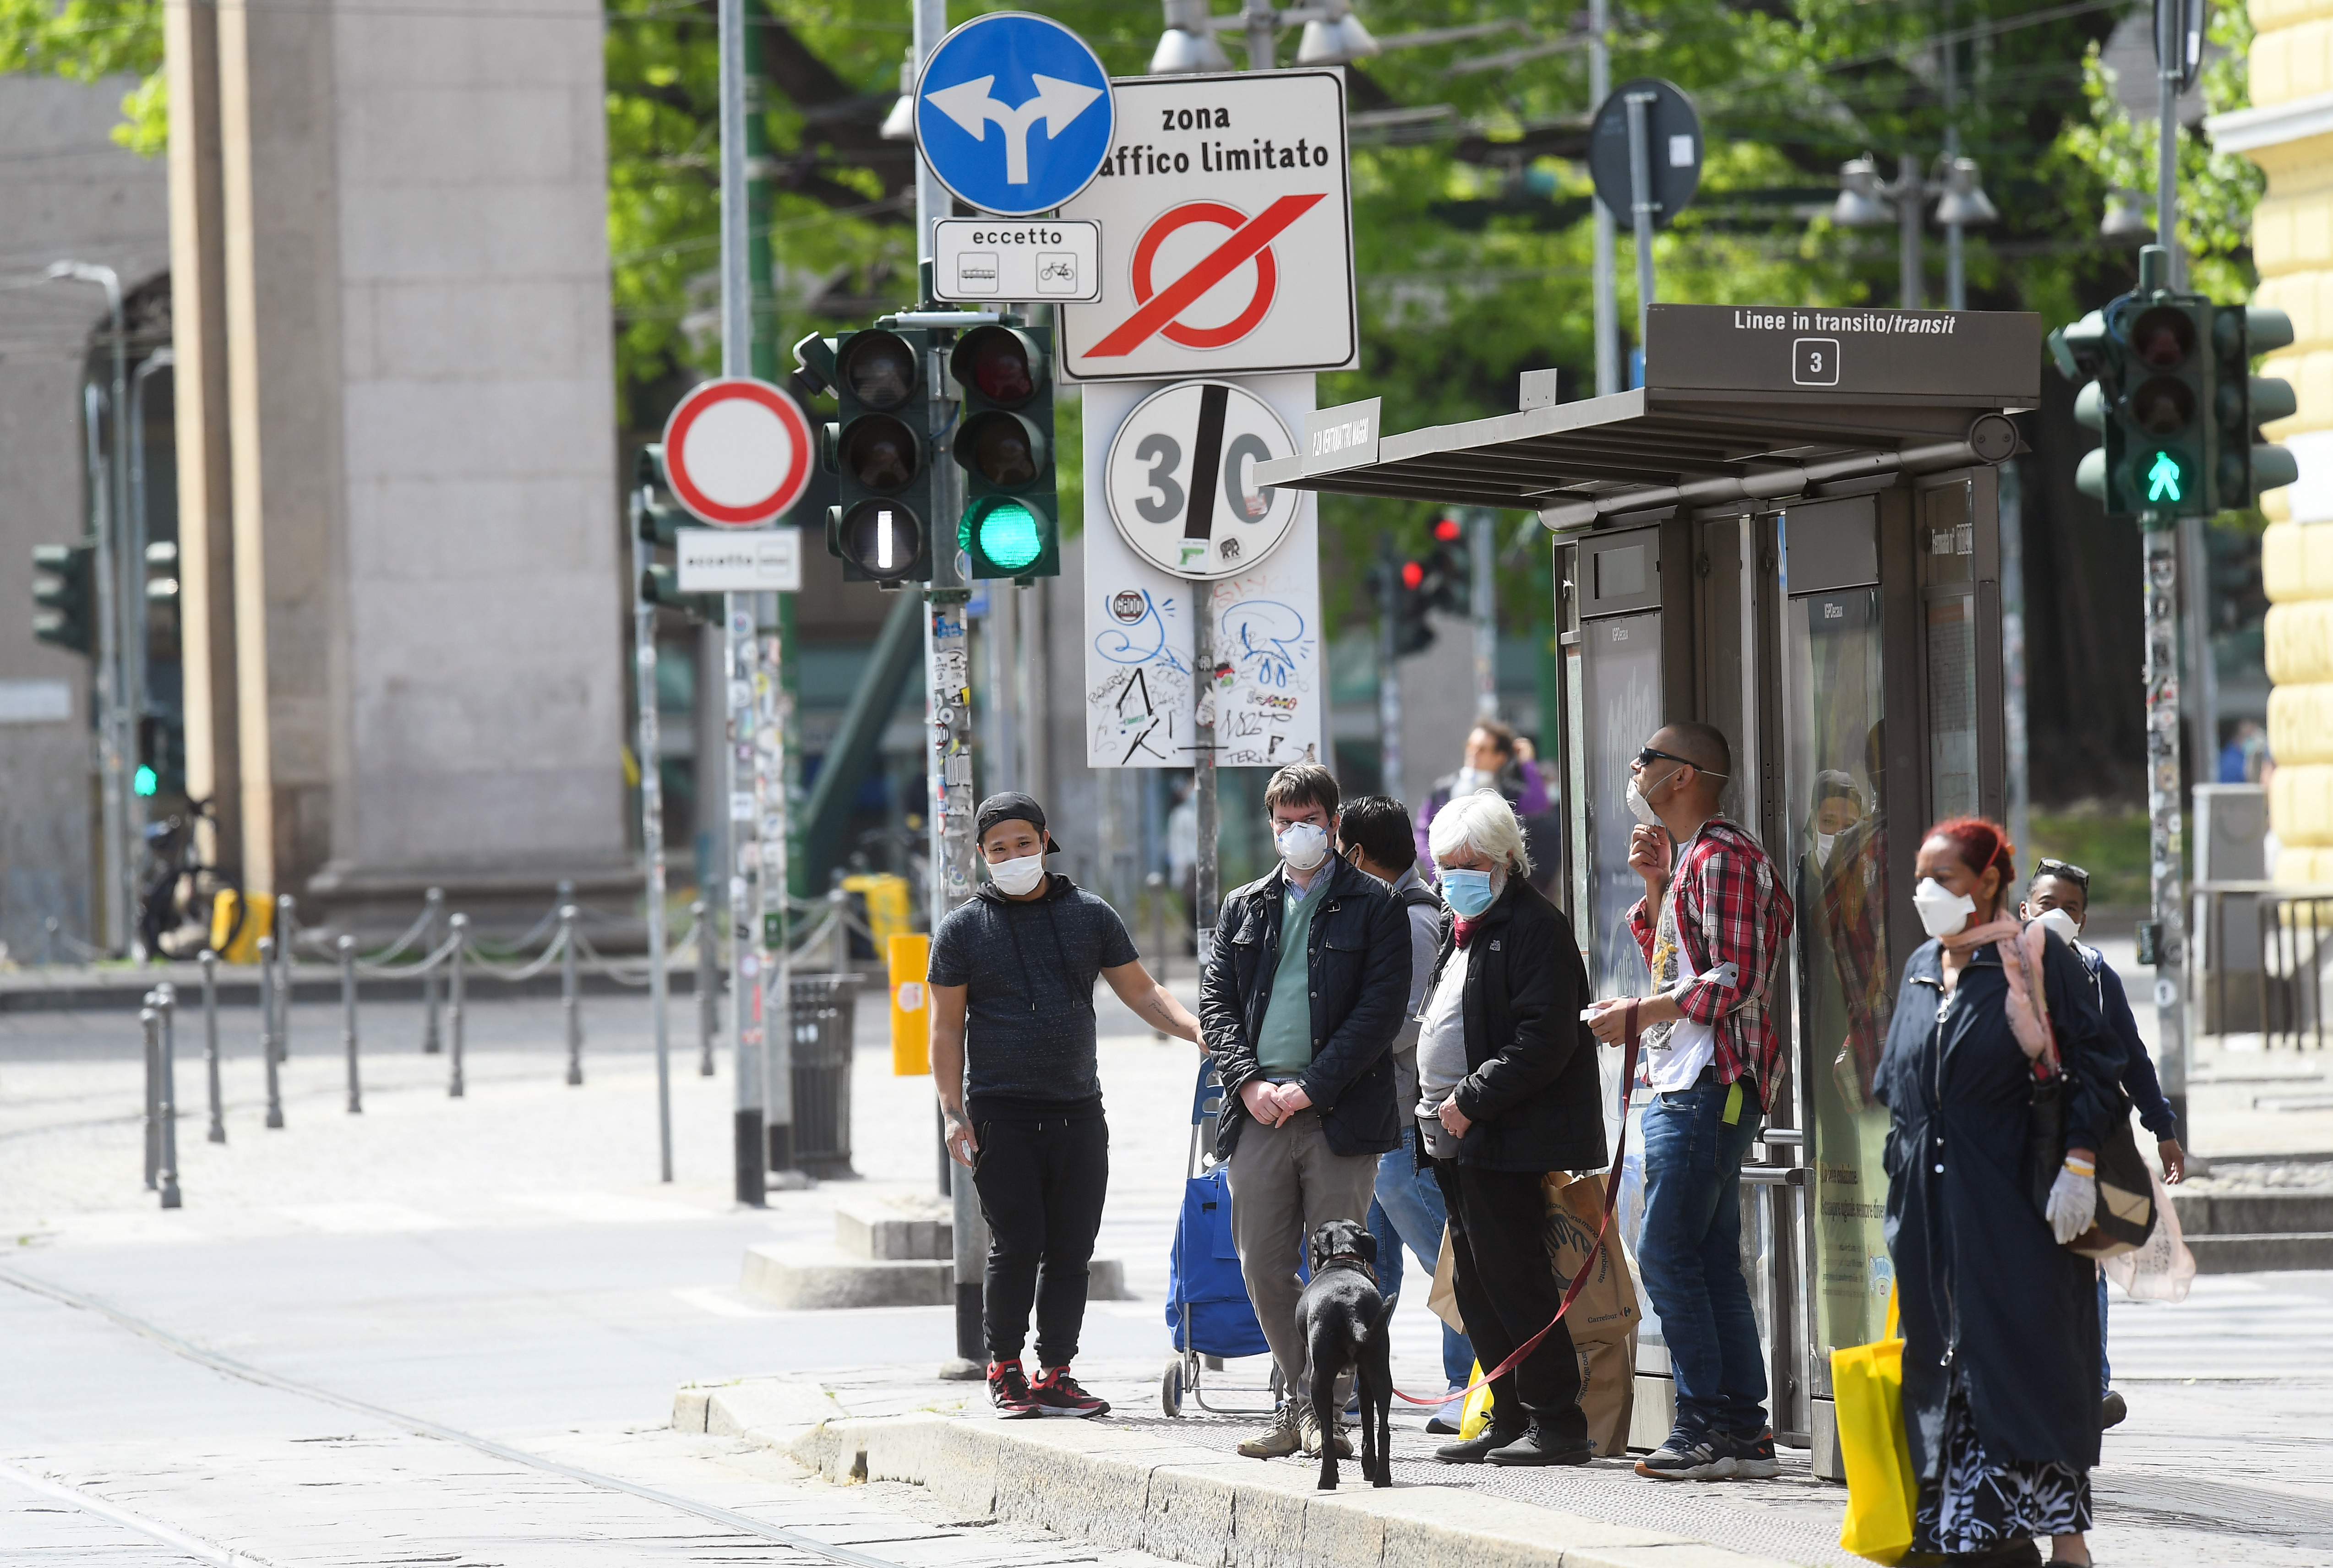 Personas con máscaras protectoras esperan en una parada de autobús en una calle cada vez más concurrida, en medio del brote del 
coronavirus, en Milán, Italia (Reuters)